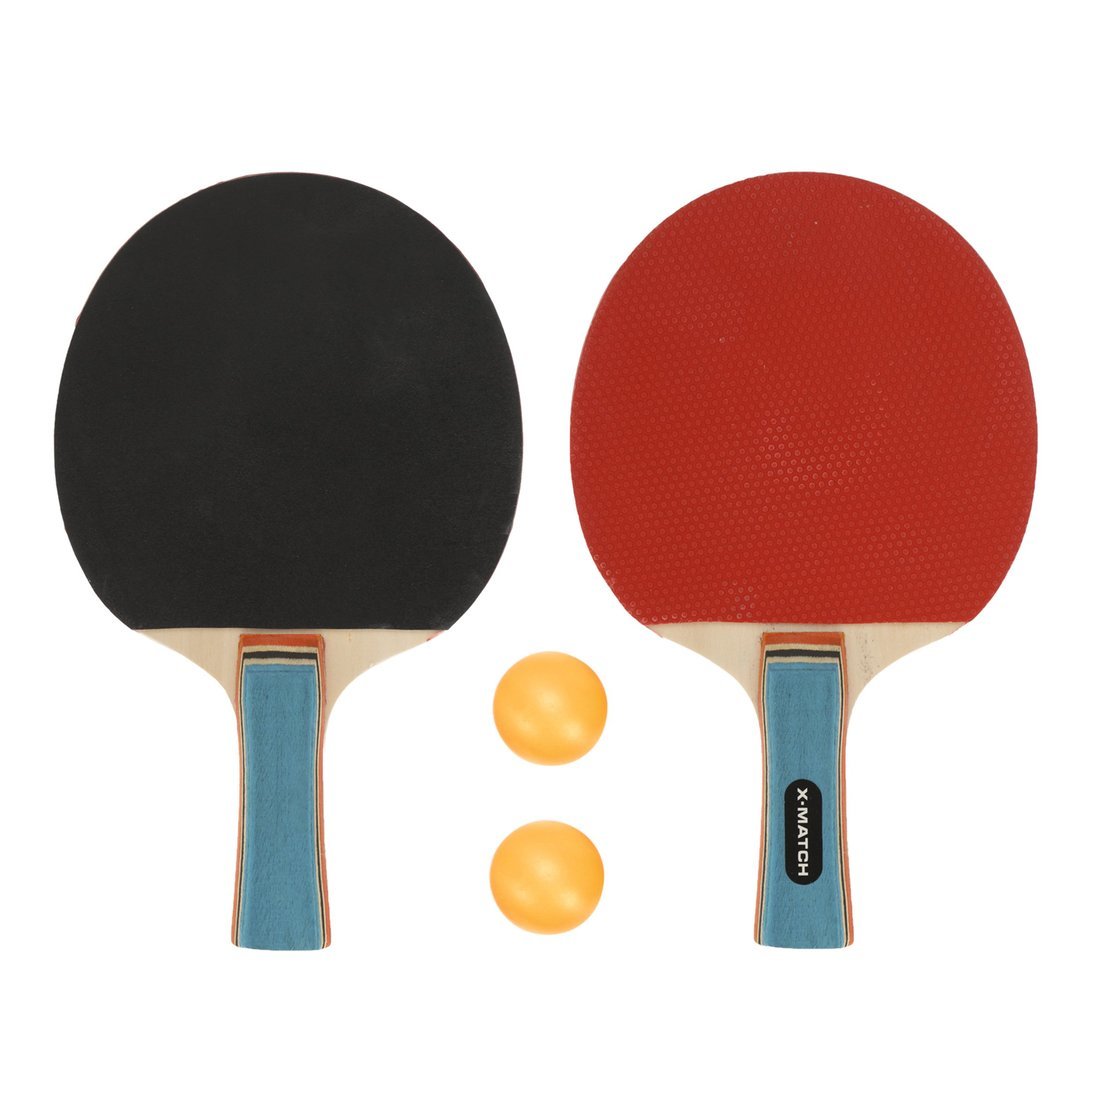 Набор для настольного тенниса X-Match (2 ракетки 8 мм., 2 шарика) 636271 ракетка для настольного тенниса start line level 500 прямая 12605